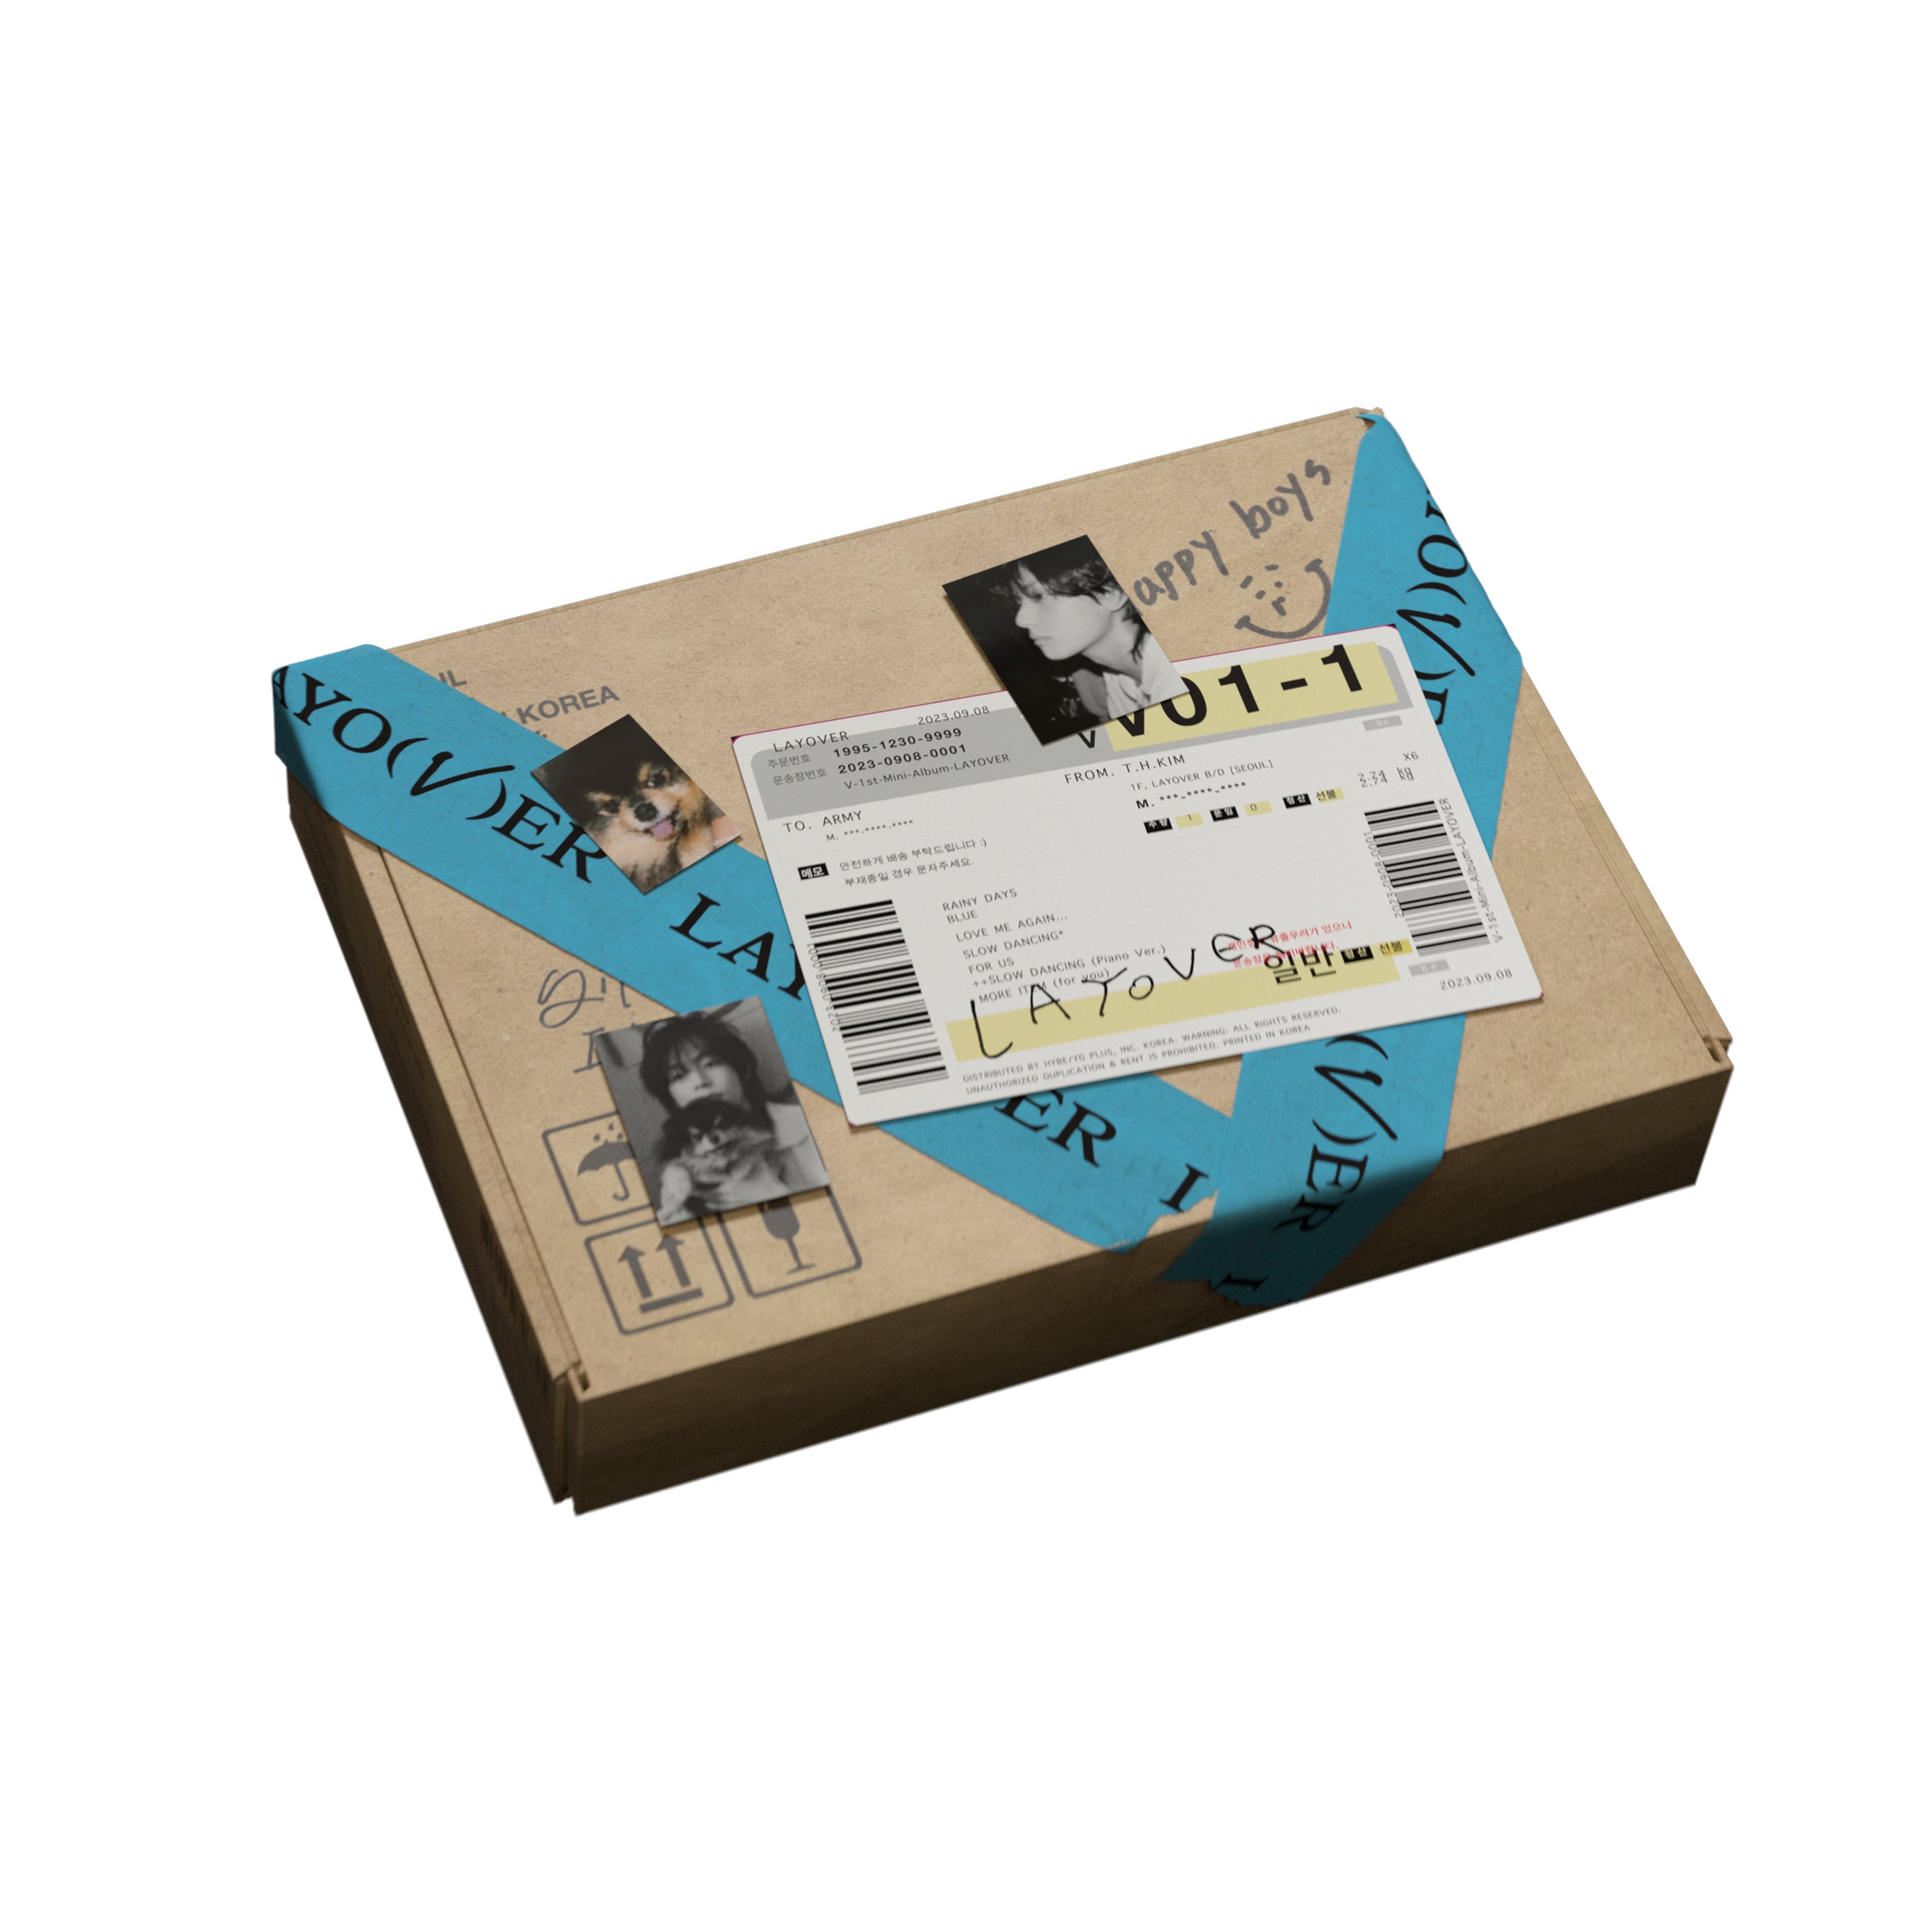 V (BTS) - Layover (Version 02): CD Box Set - Polydor Store UK